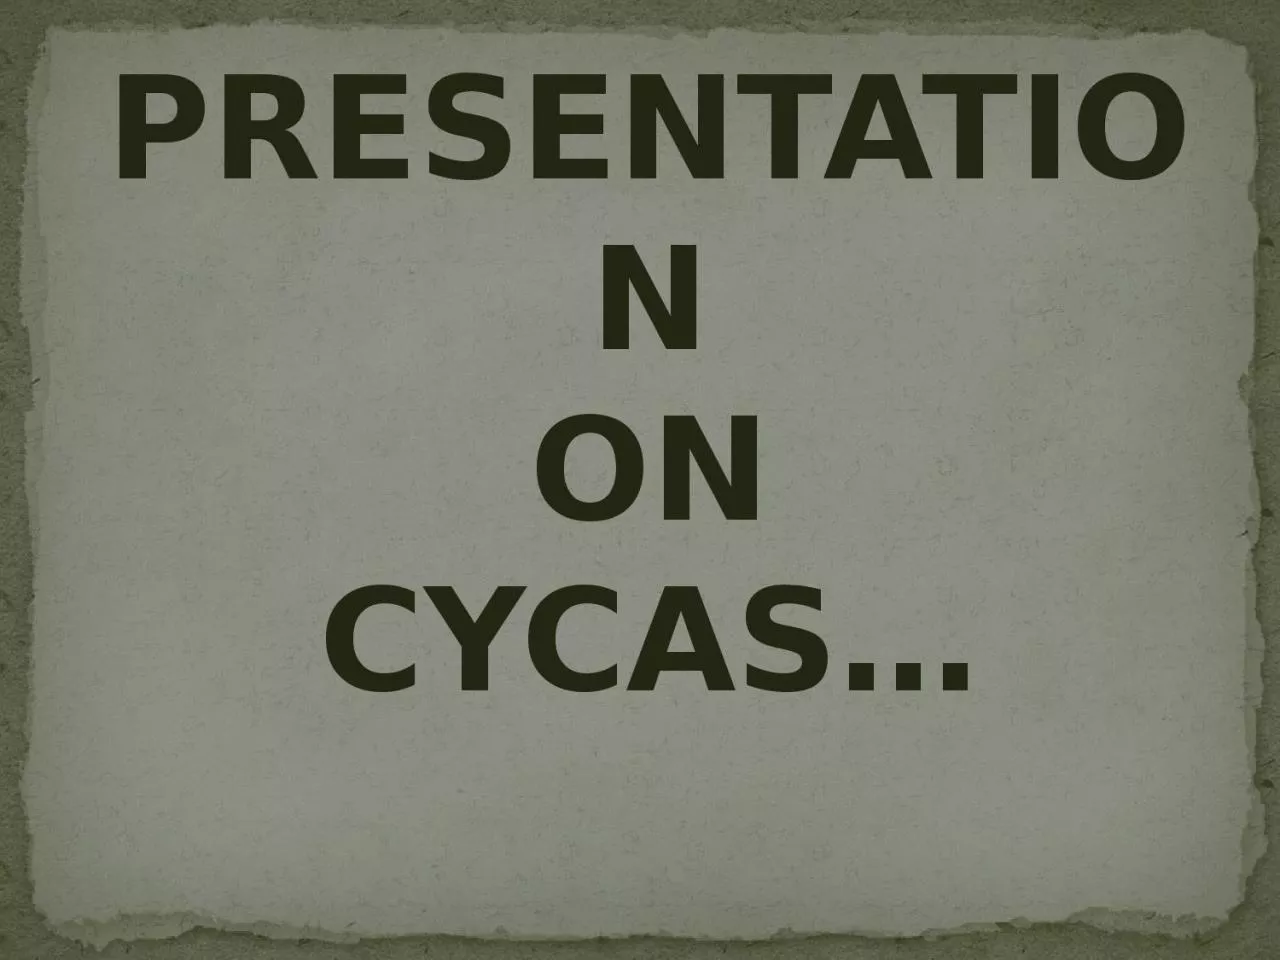 PRESENTATION ON CYCAS…